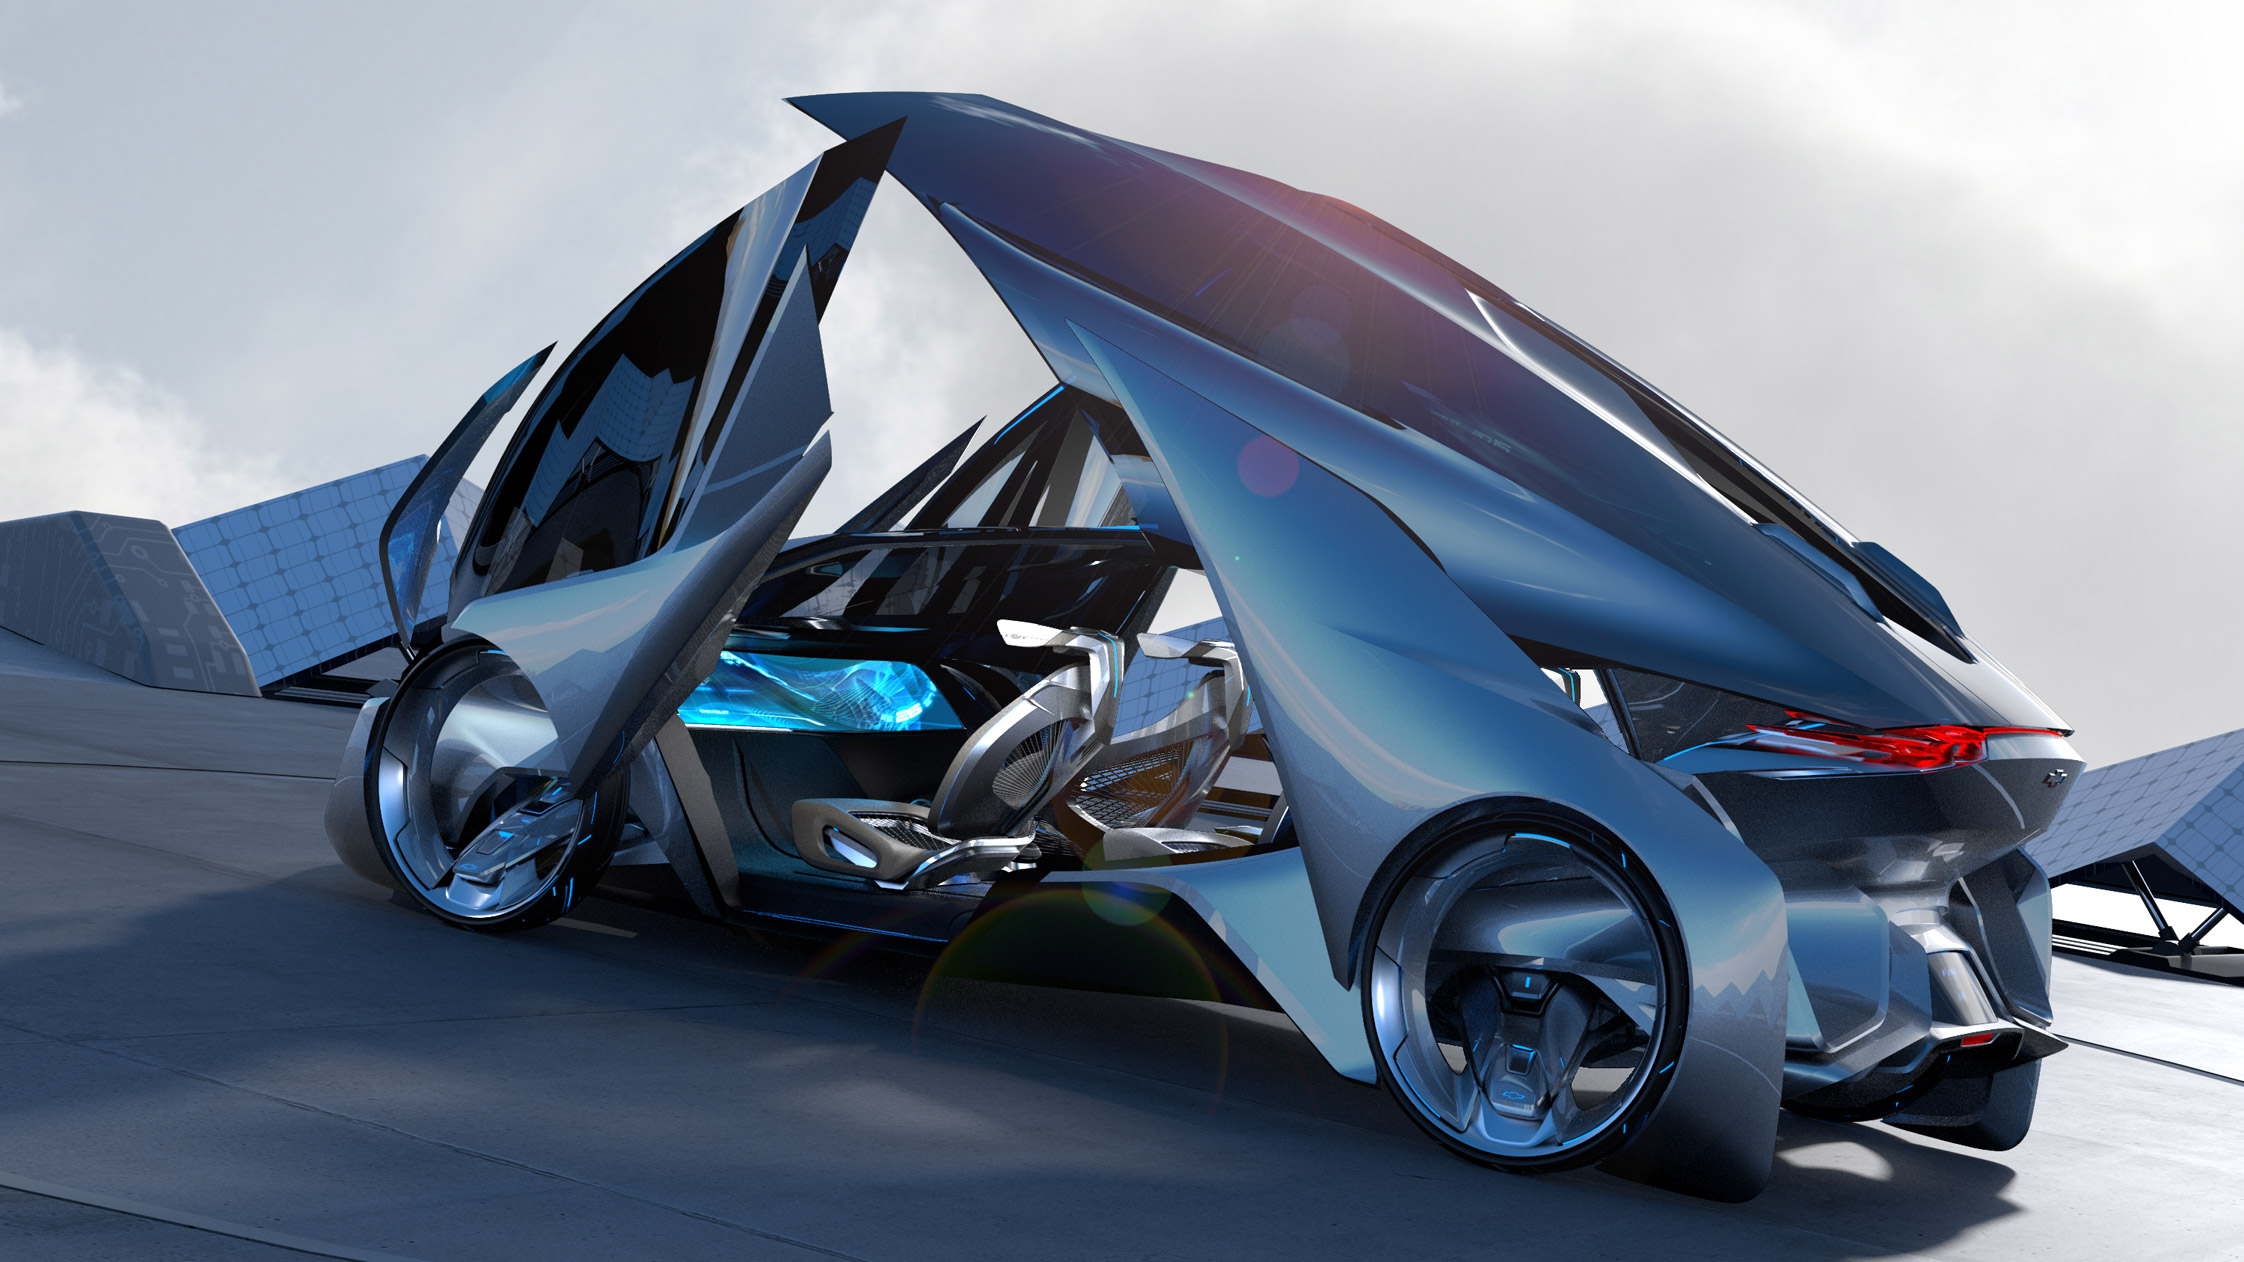 photo CHEVROLET FNR Concept concept-car 2015 - Motorlegend.com